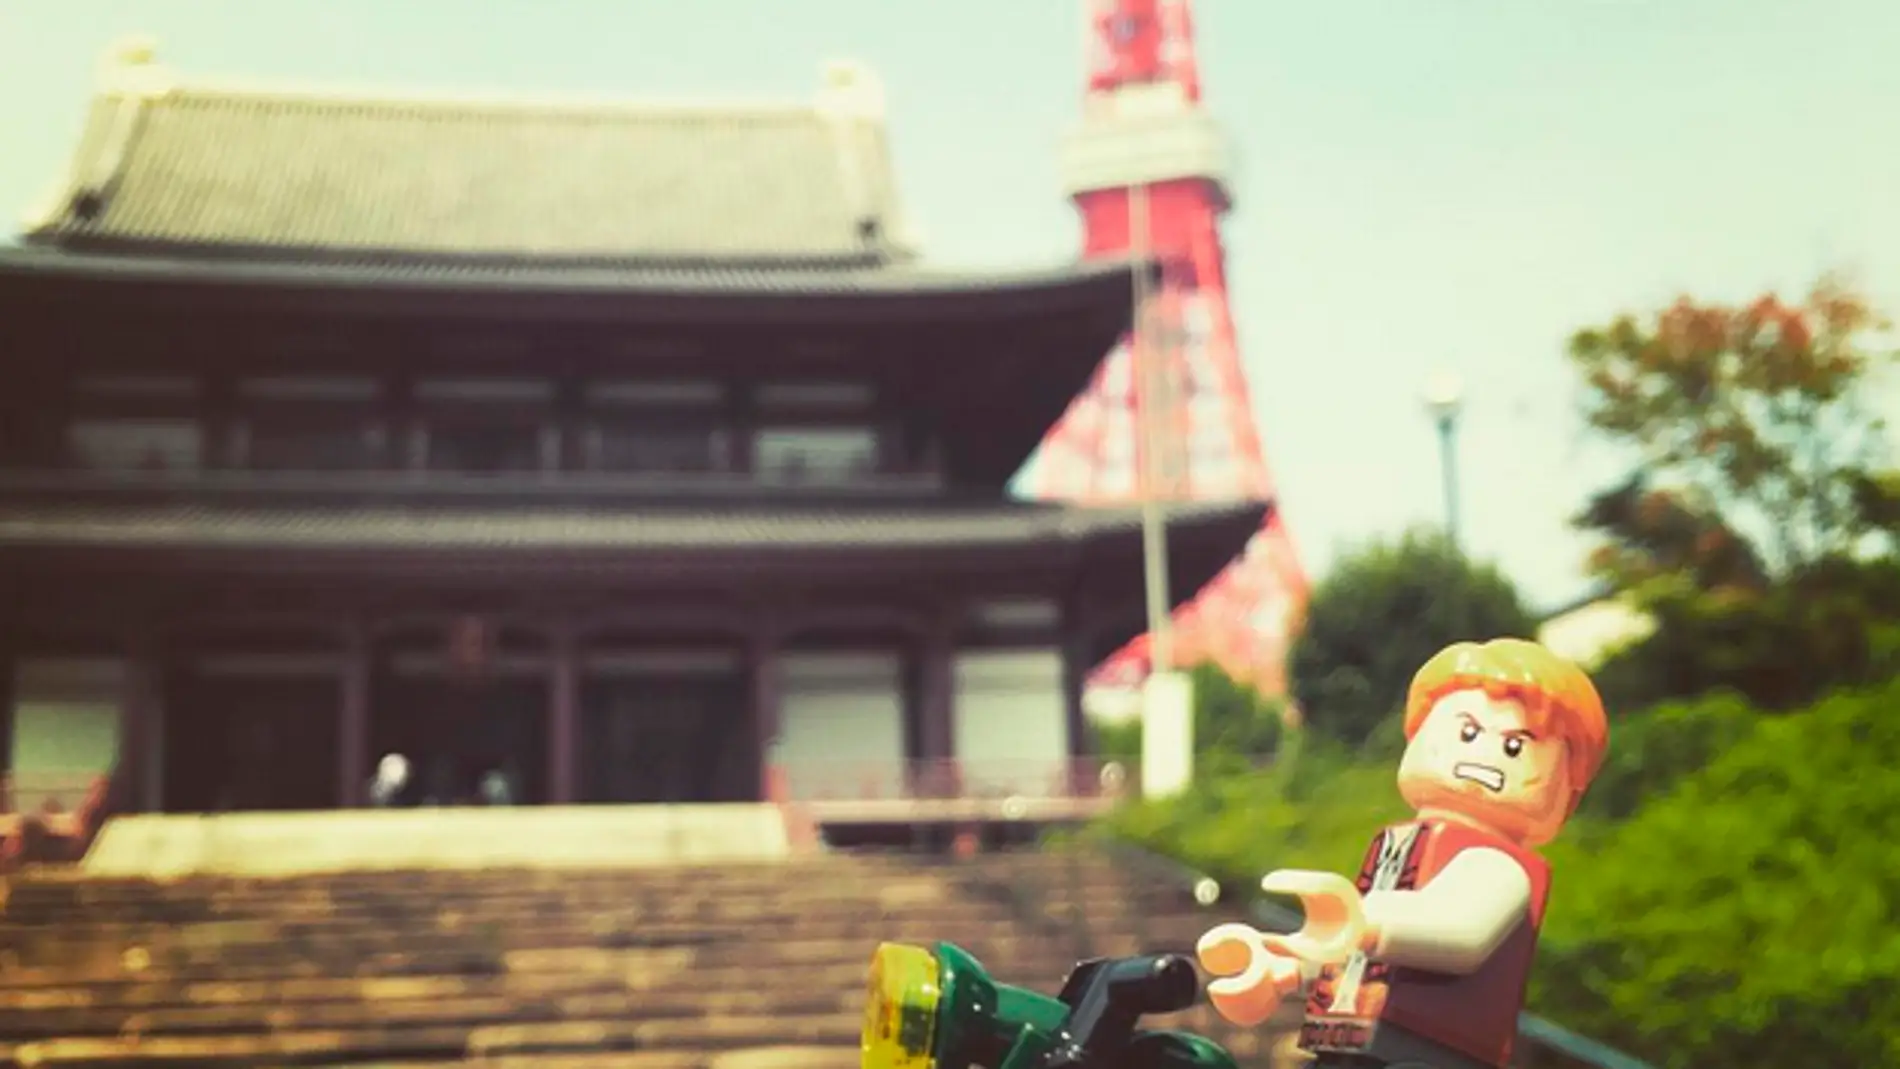 Lego Owen y su moto en el Templo Zojo-ji